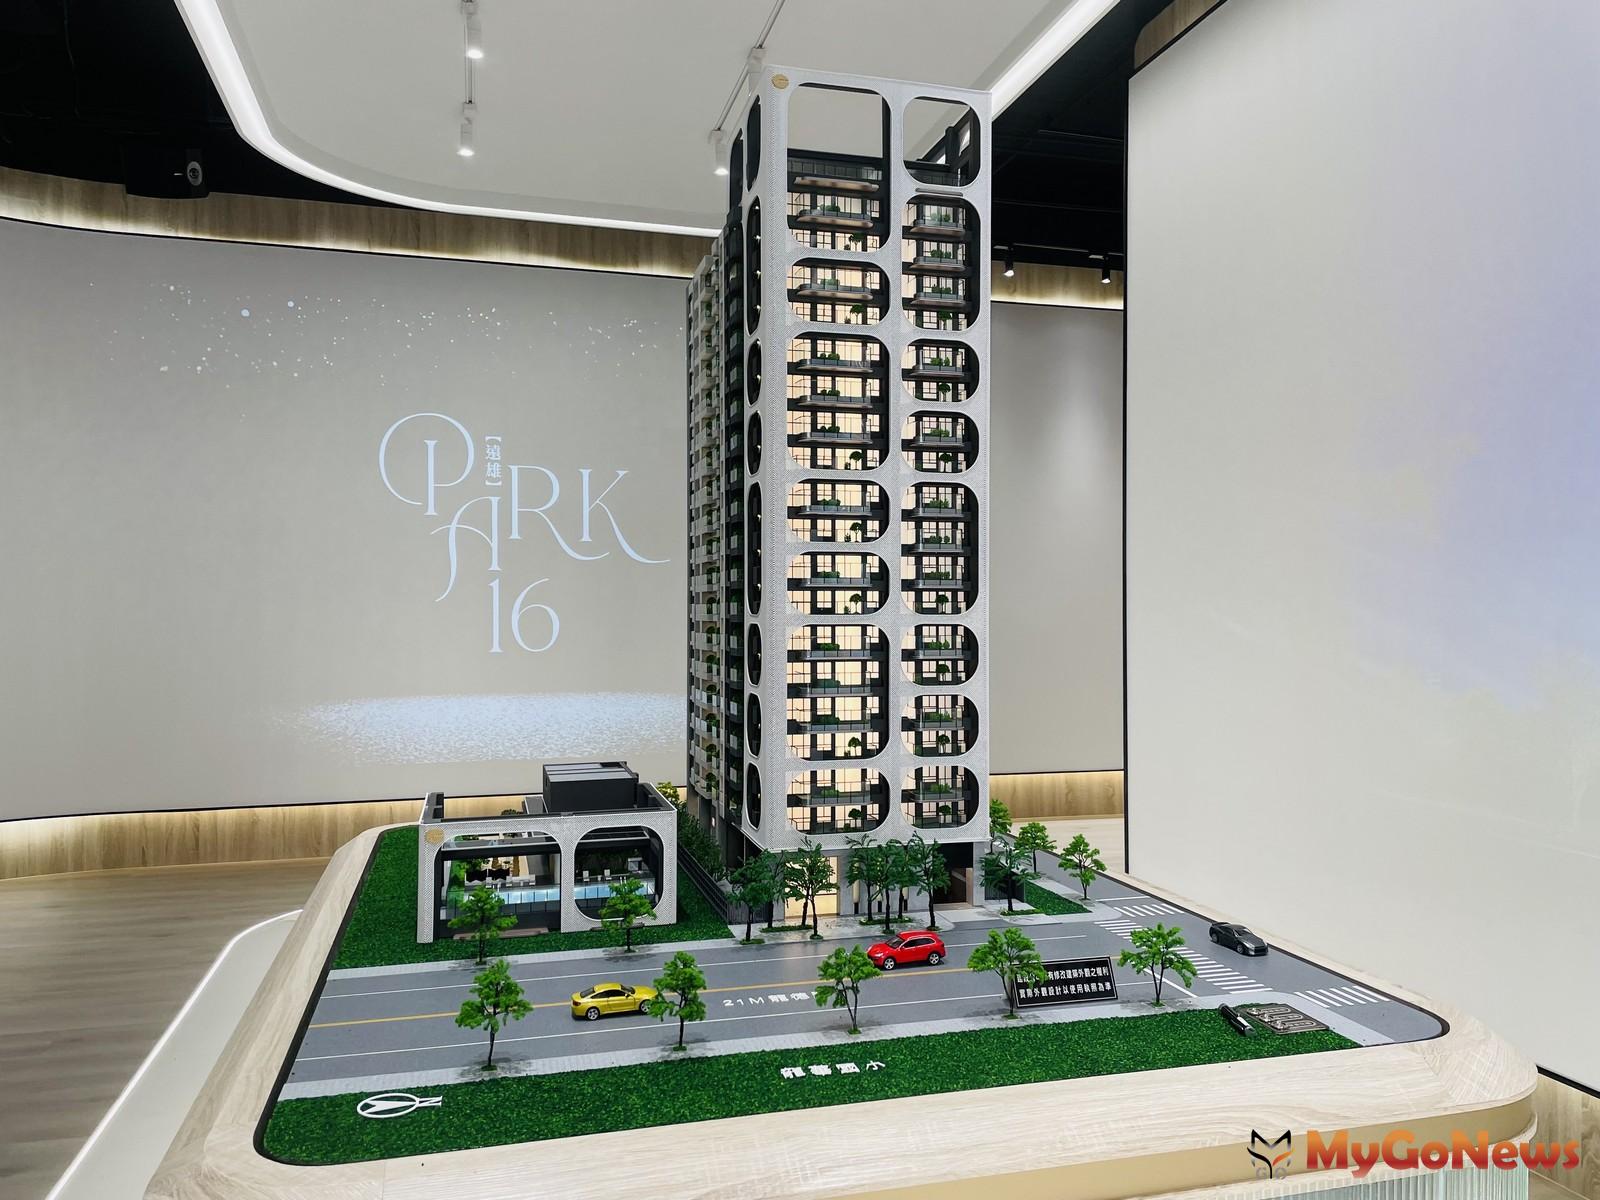 「遠雄PARK 16」建築模型 MyGoNews房地產新聞 熱銷推案